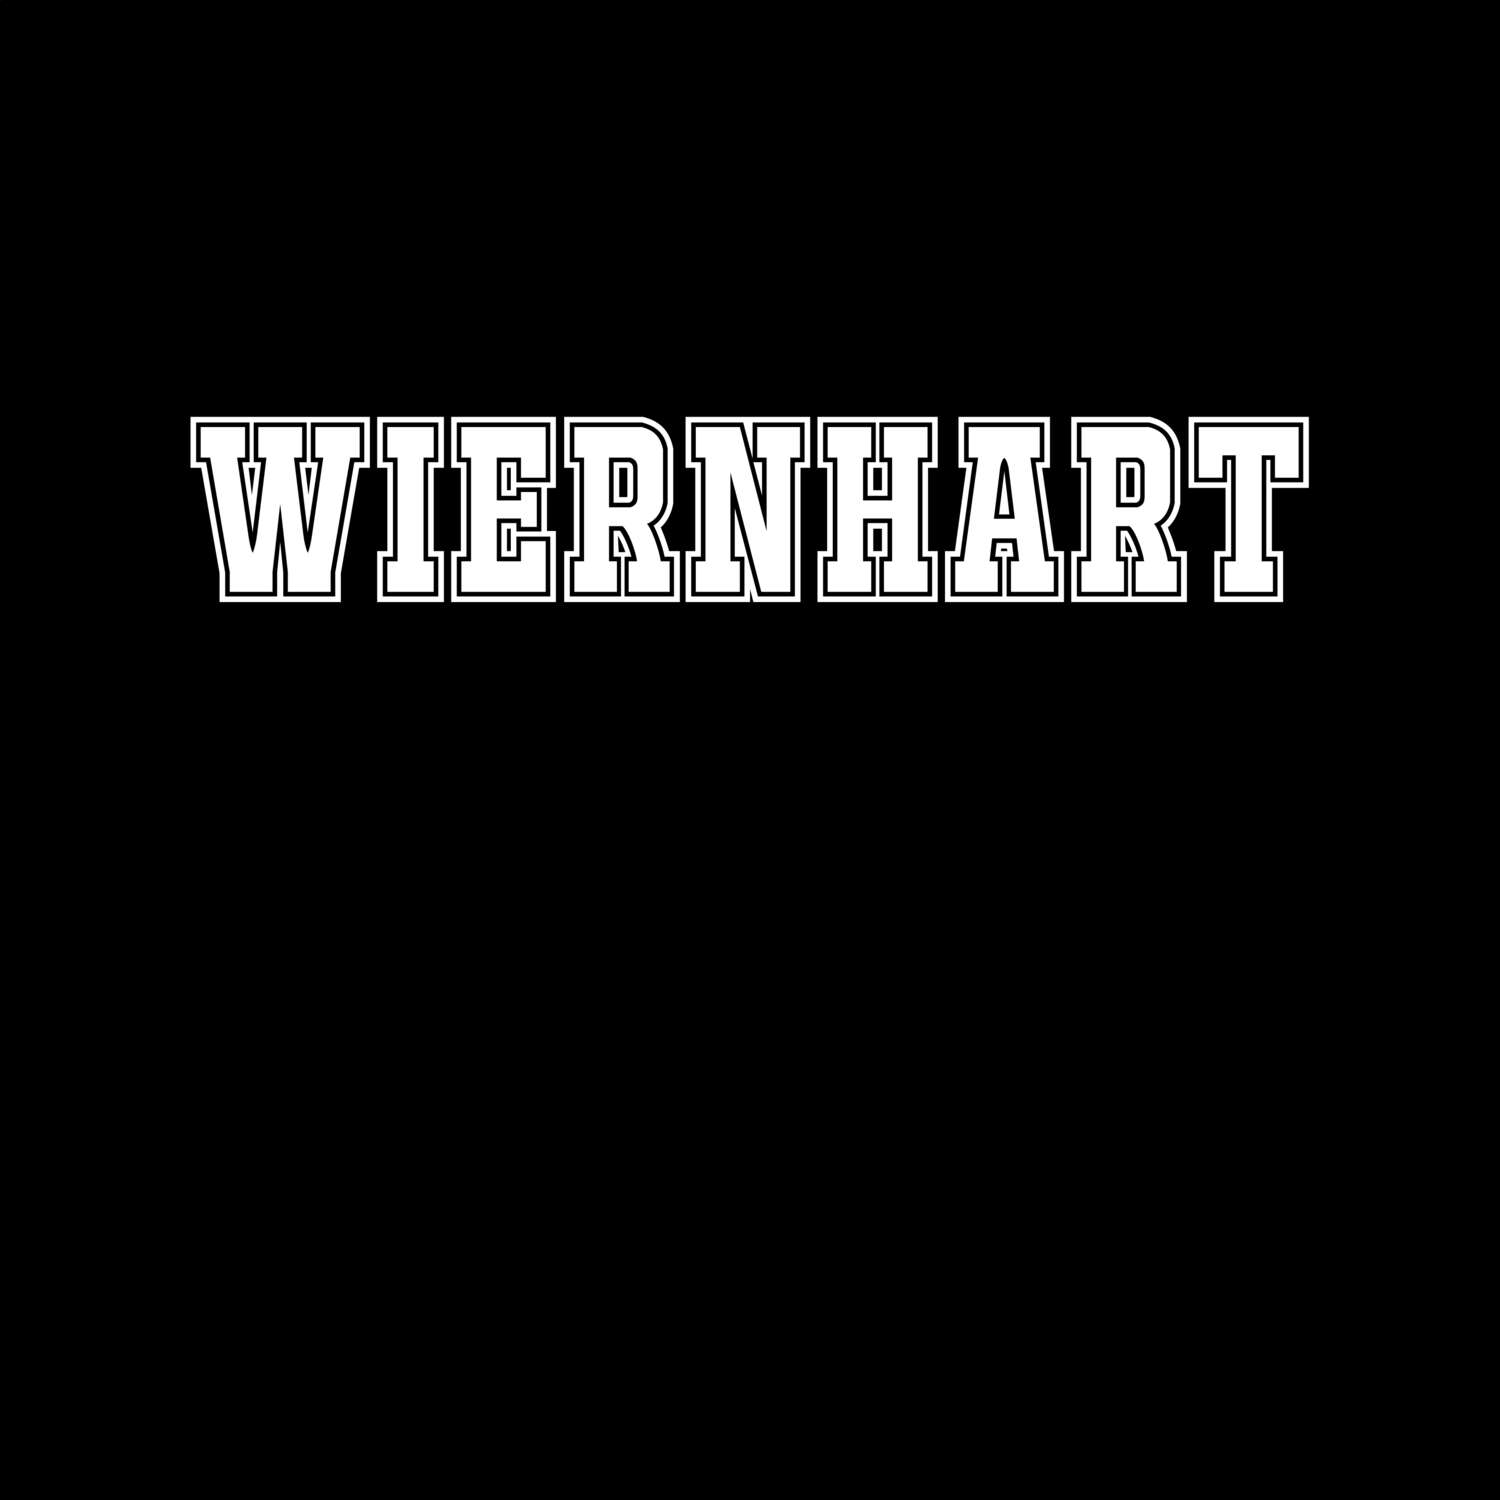 Wiernhart T-Shirt »Classic«